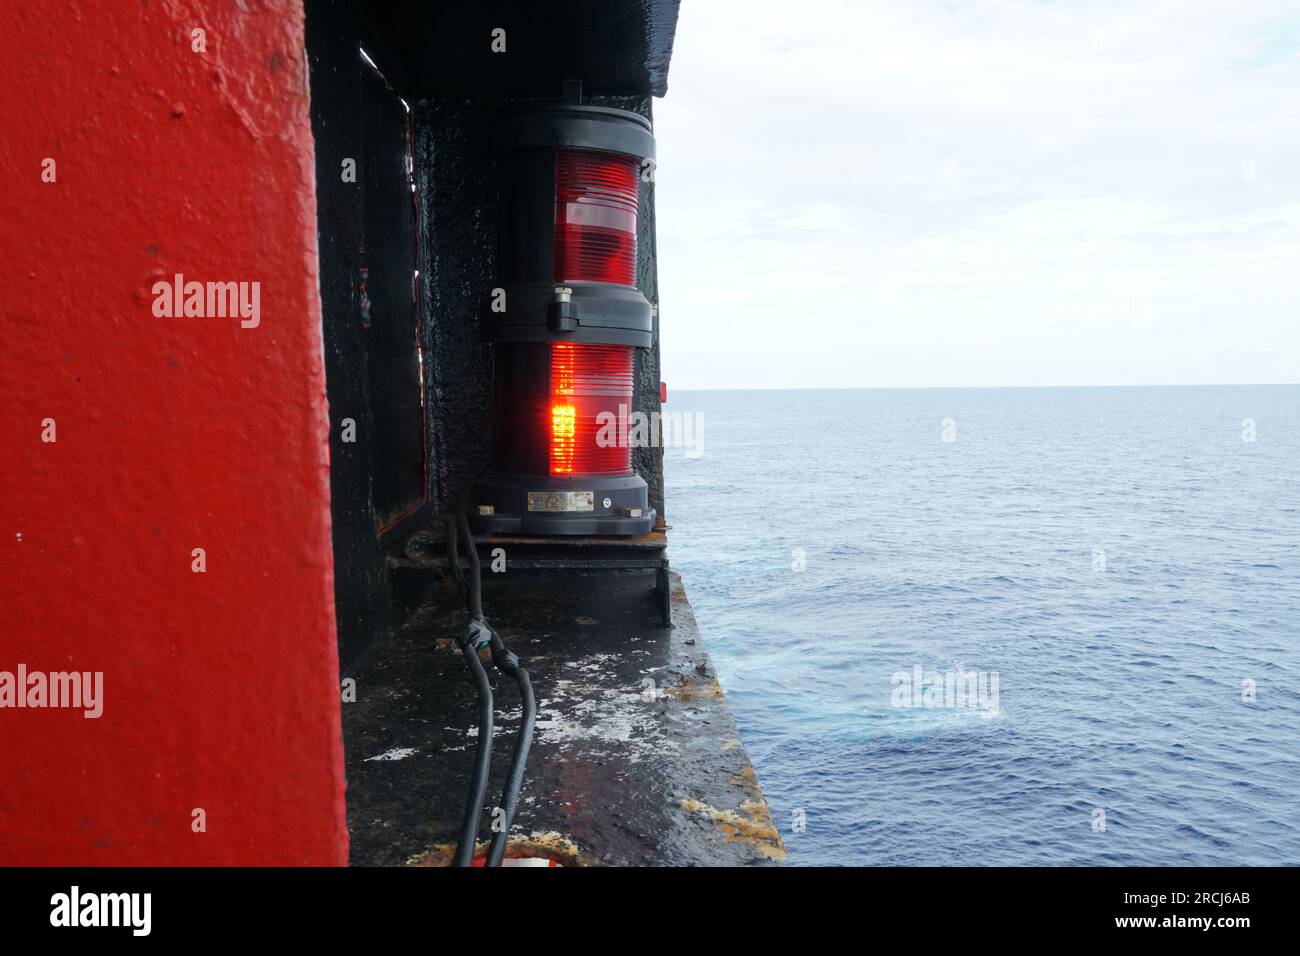 Die roten seitlichen Navigationslichter des Schiffs befinden sich neben dem Aufbau. Stockfoto